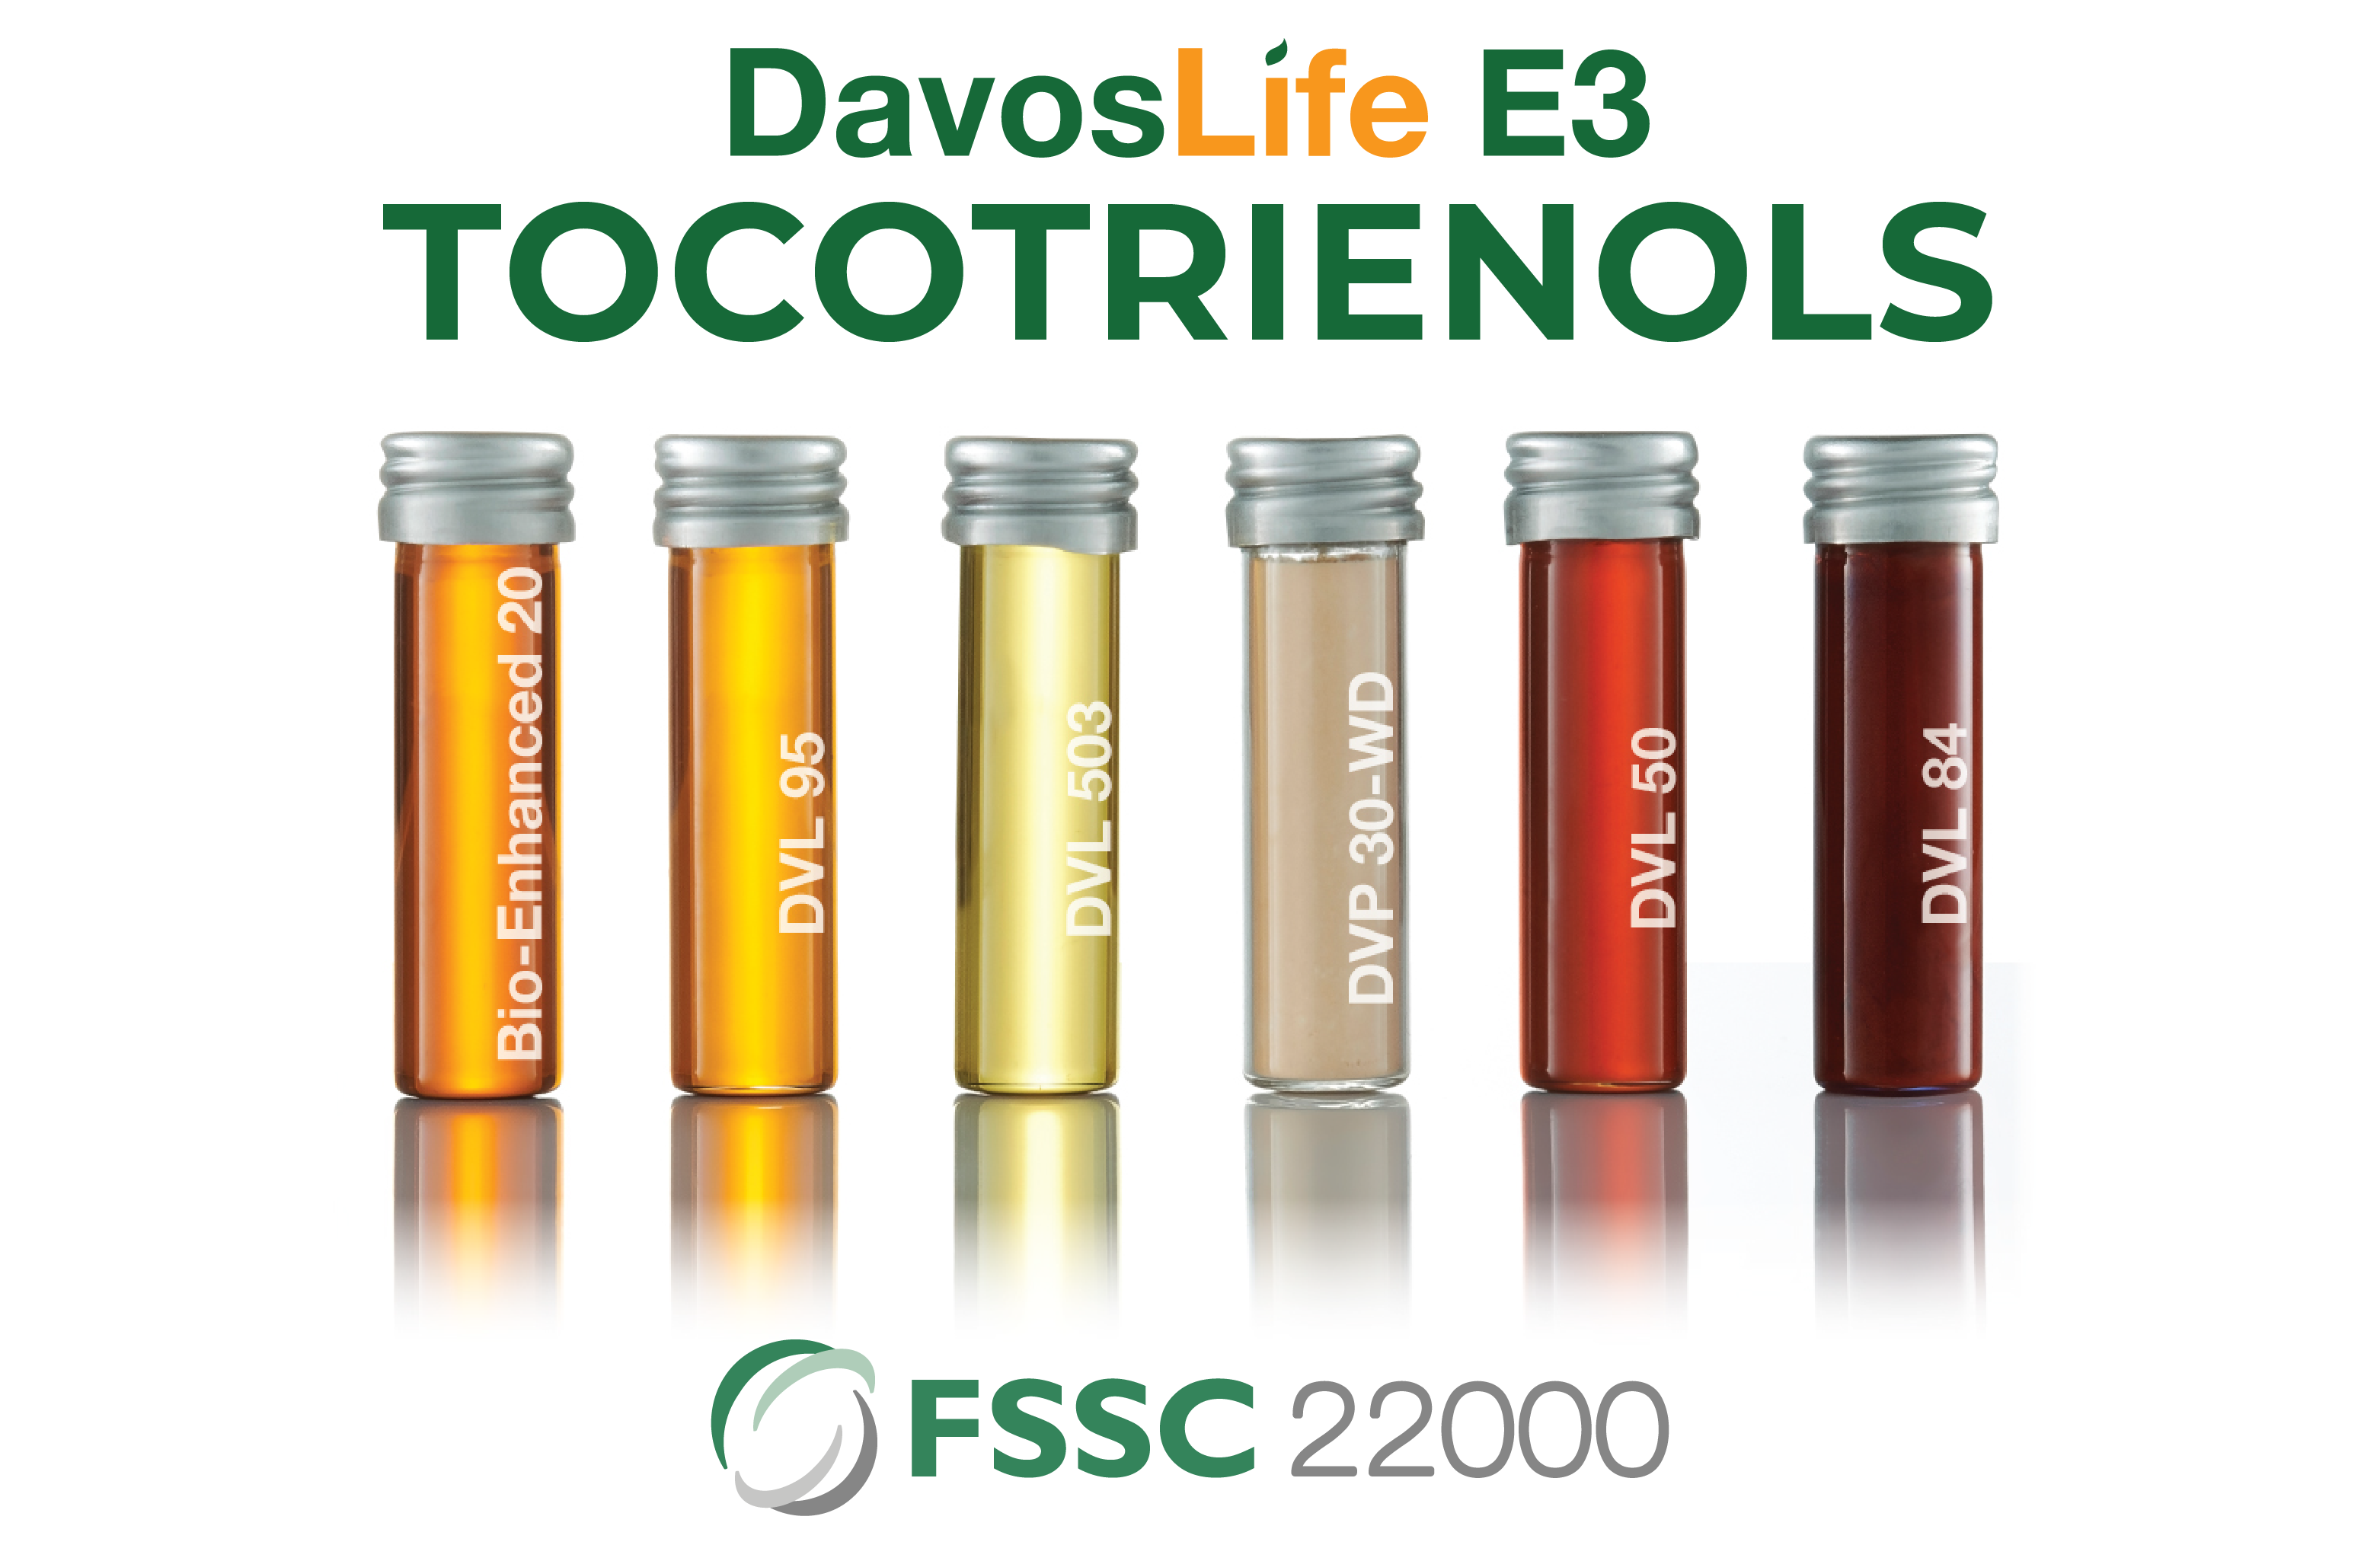 DavosLife E3 full range FSSC 22000 Certification